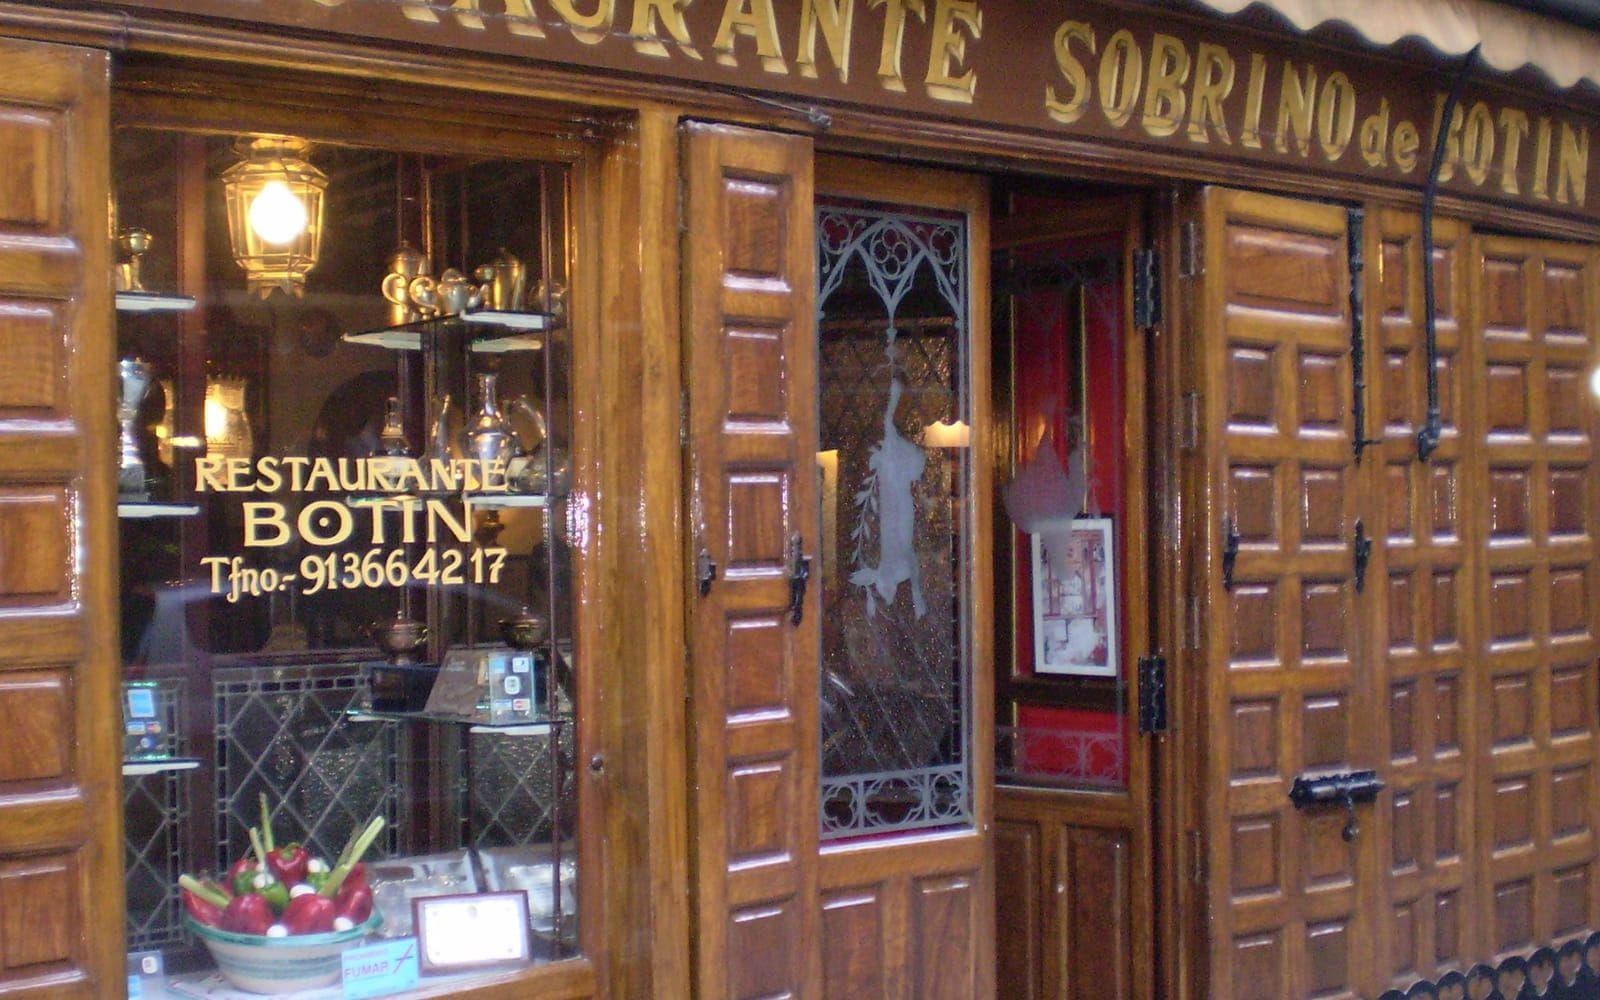 <strong>VÄRLDENS ÄLDSTA RESTAURANG.</strong> 1725 öppnade den franske kocken Jean Botín upp restaurangen Sobrino de Botín i spanska huvudstaden Madrid. Det gör den till världens äldsta restaurang, enligt Guinness rekordbok.